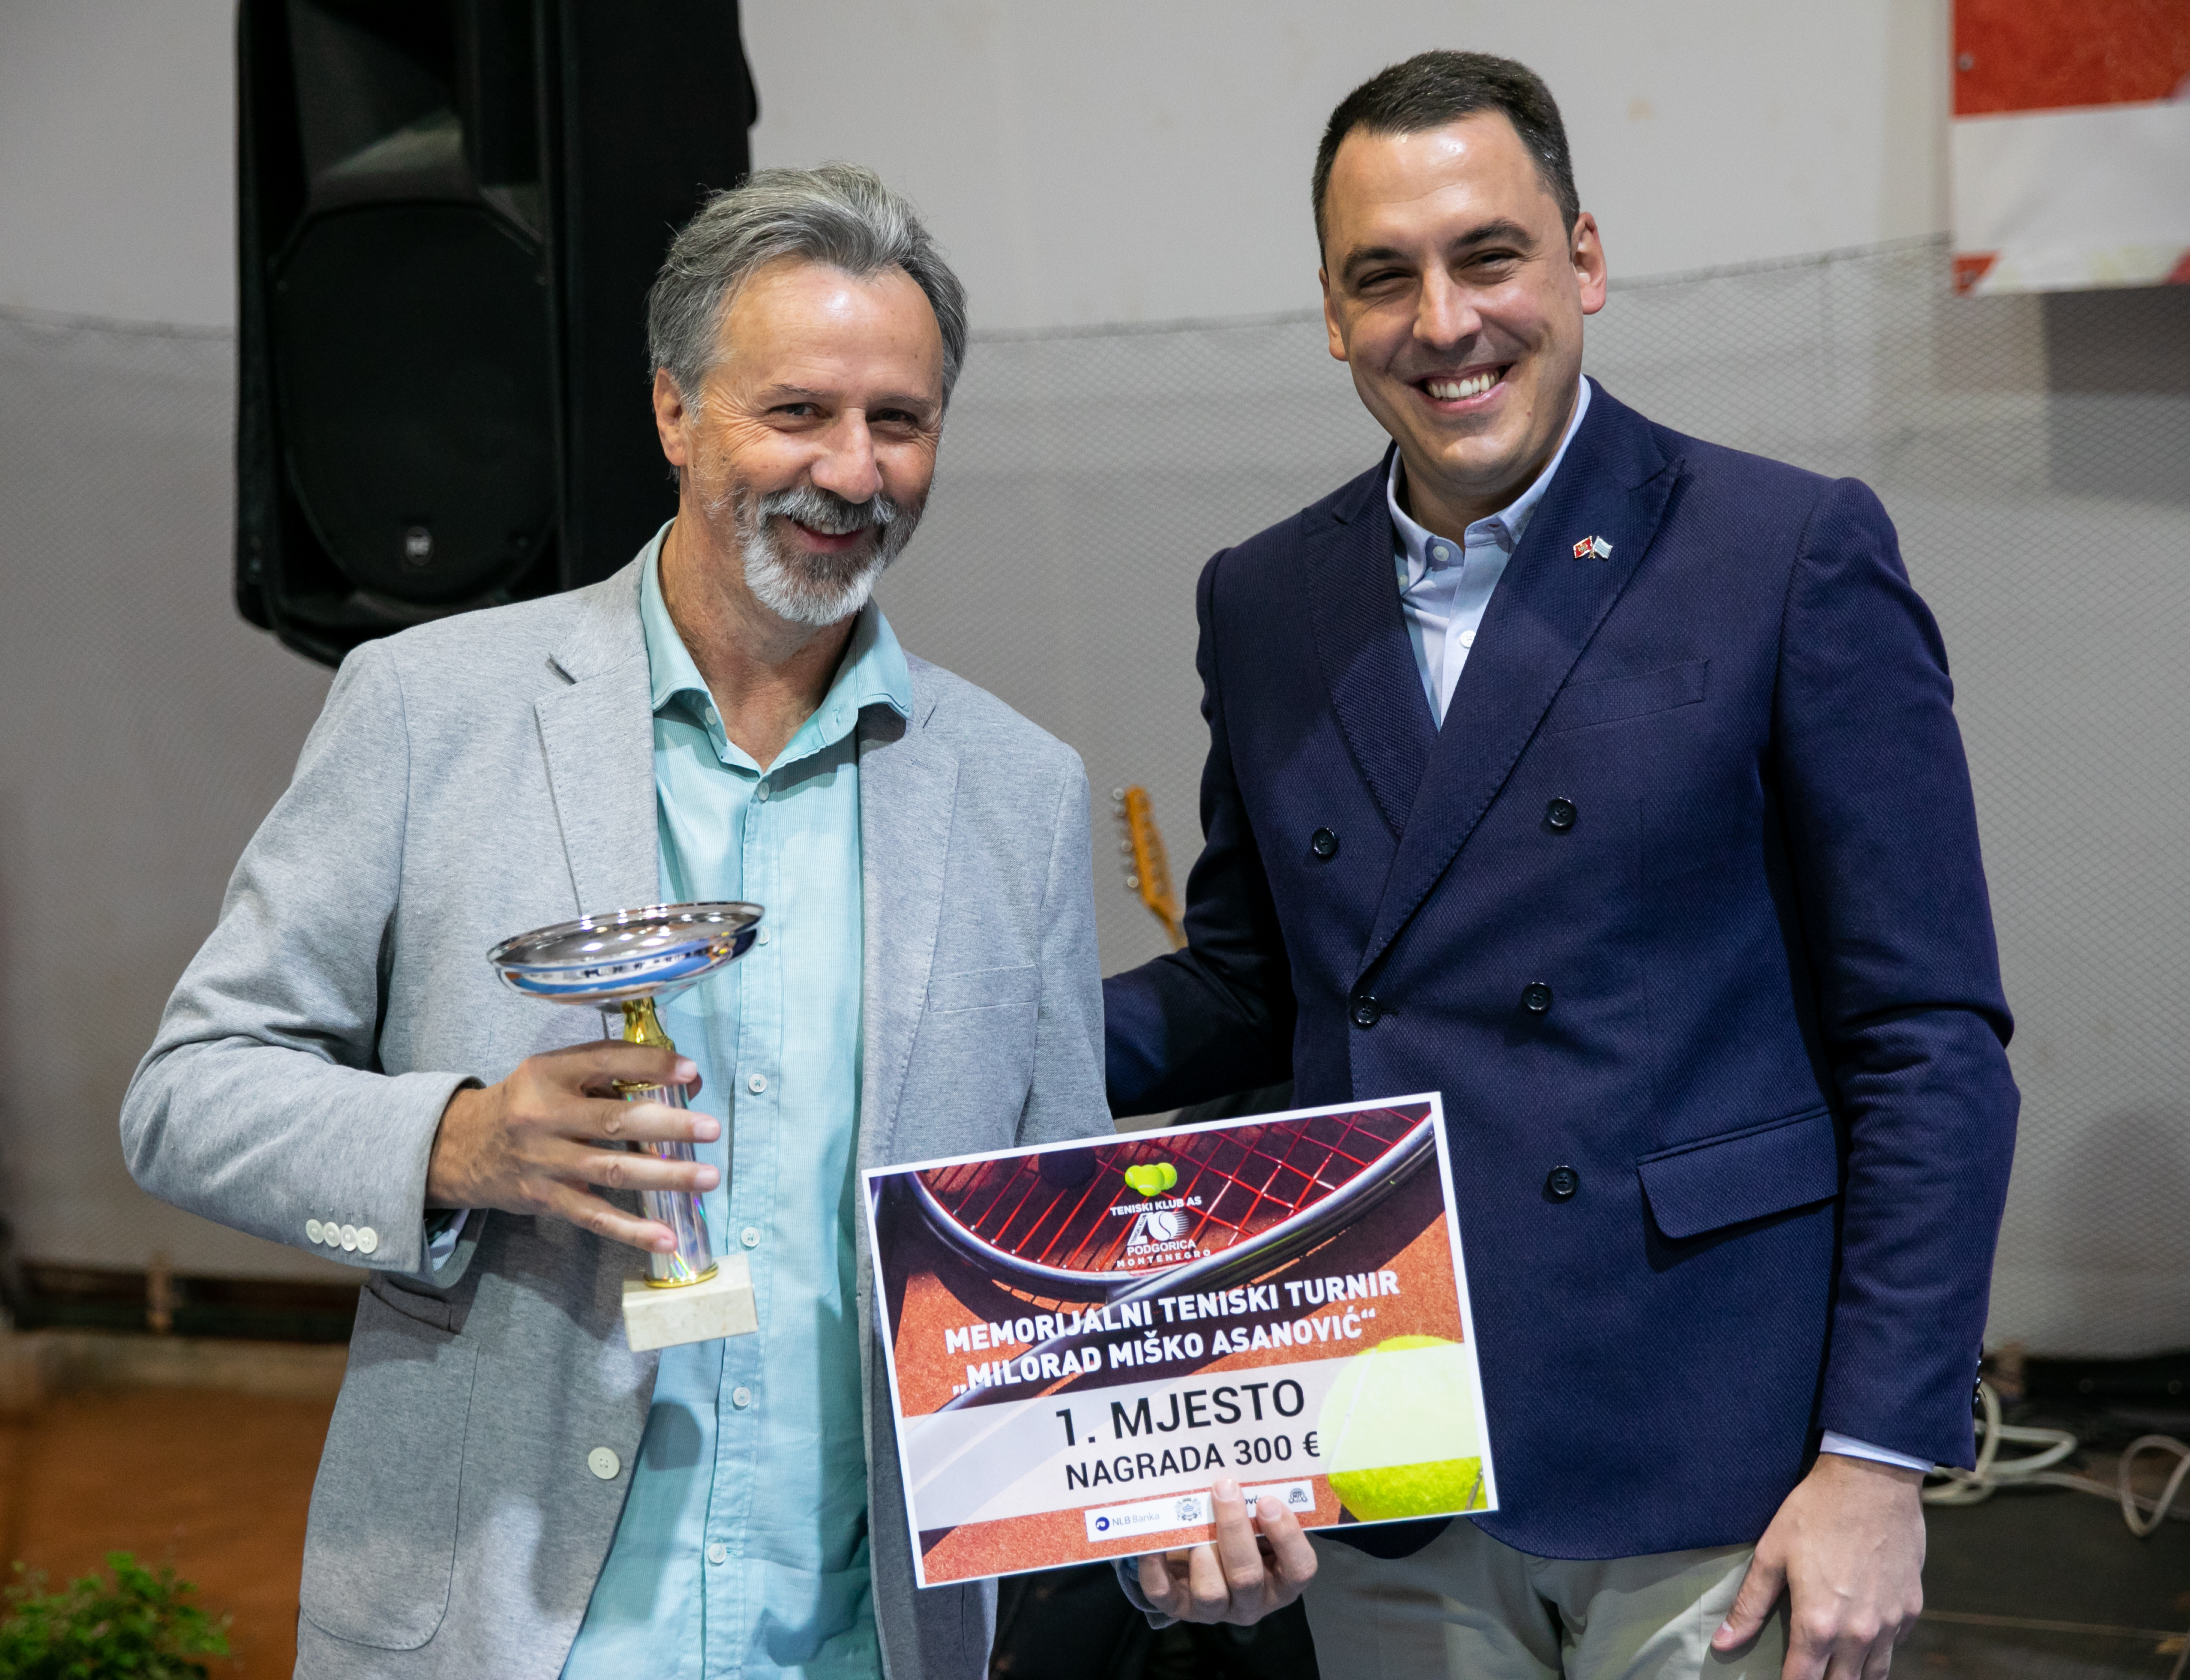 Uz podršku Glavnog grada održan prvi Memorijalni turnir „Milorad Miško Asanović“